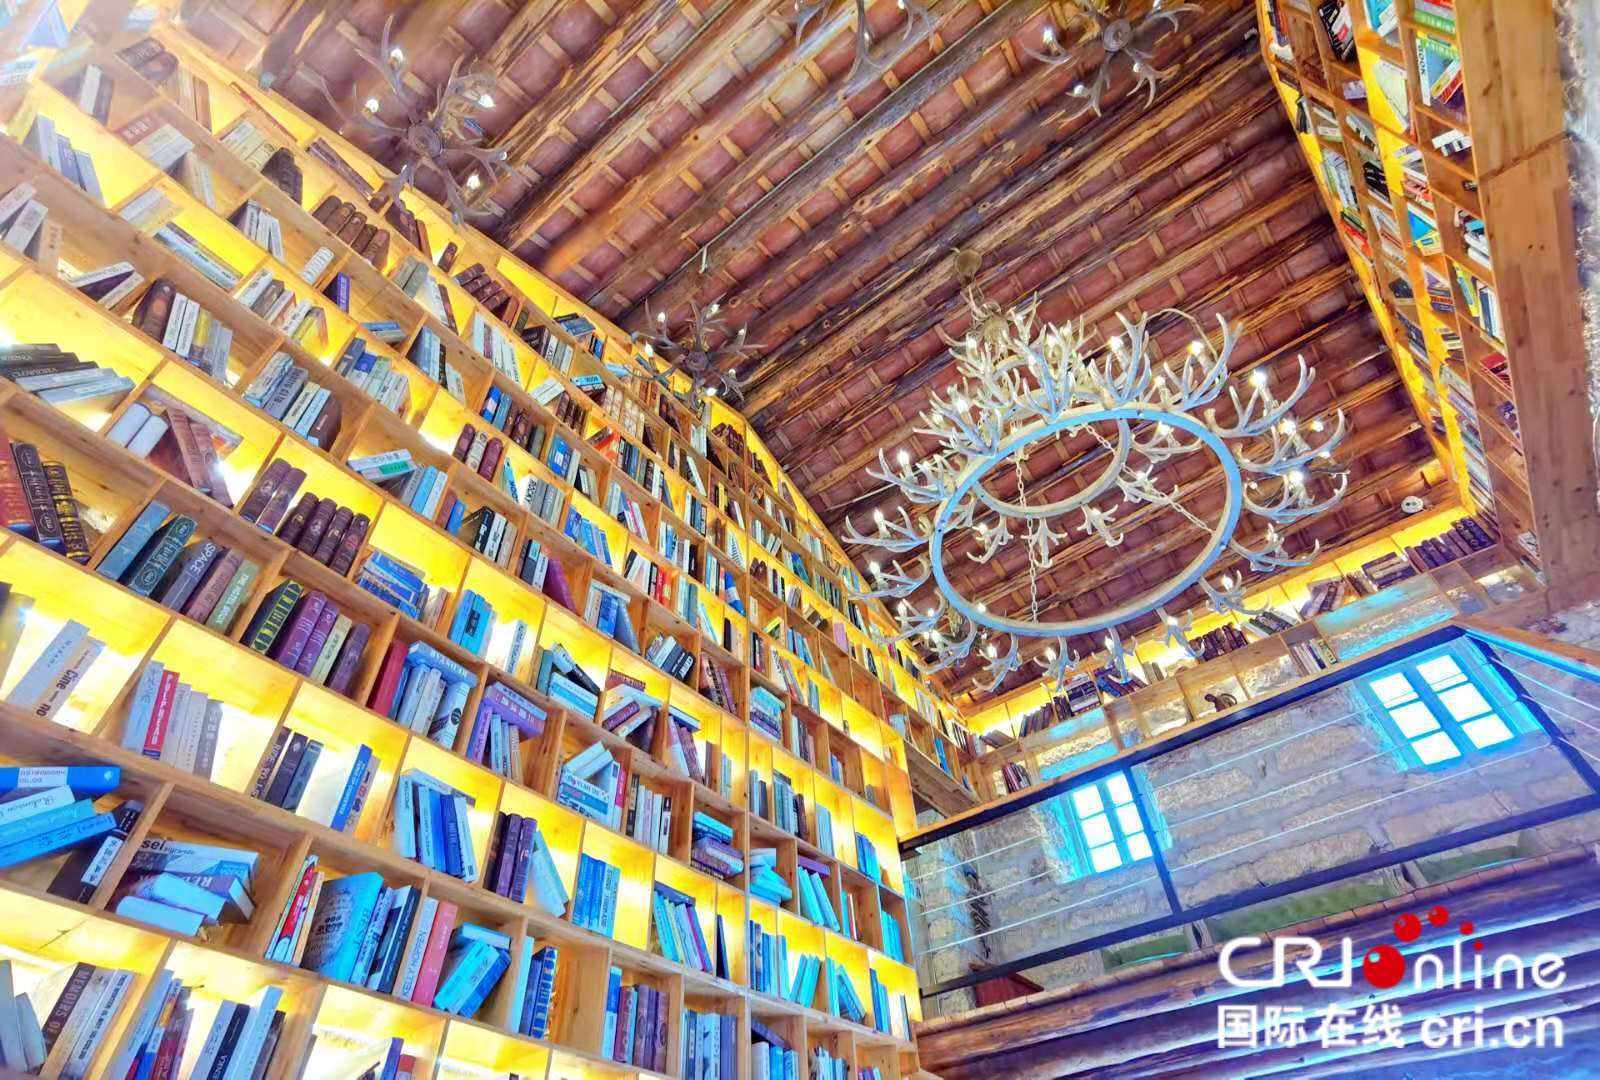 廣西首家海島智慧書房連結已附上【A】廣西潿洲島上的 “網紅書房”：用珊瑚石打造 享受智慧閱讀